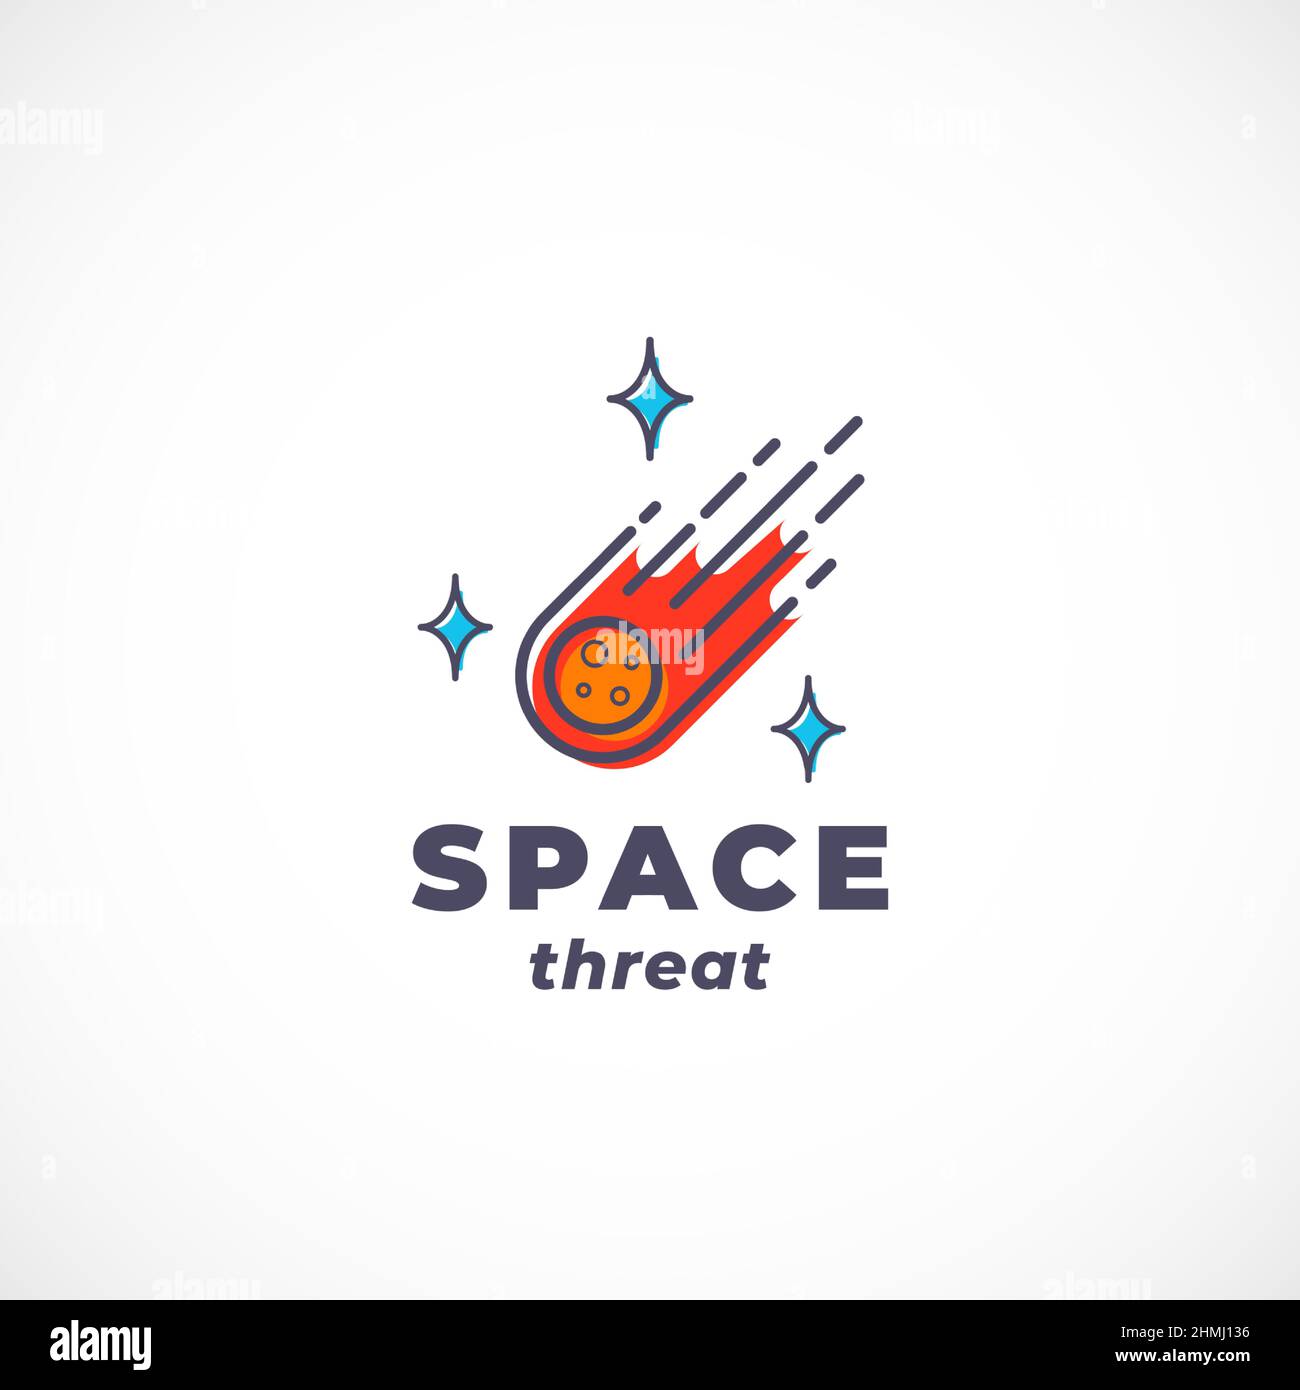 Space Threat Abstract Vector Sign, Symbol, Logo Template. Skizzieren Sie außerirdische Meteor-Kometen-Silhouette mit moderner Typografie. Science Fiction Stock Vektor